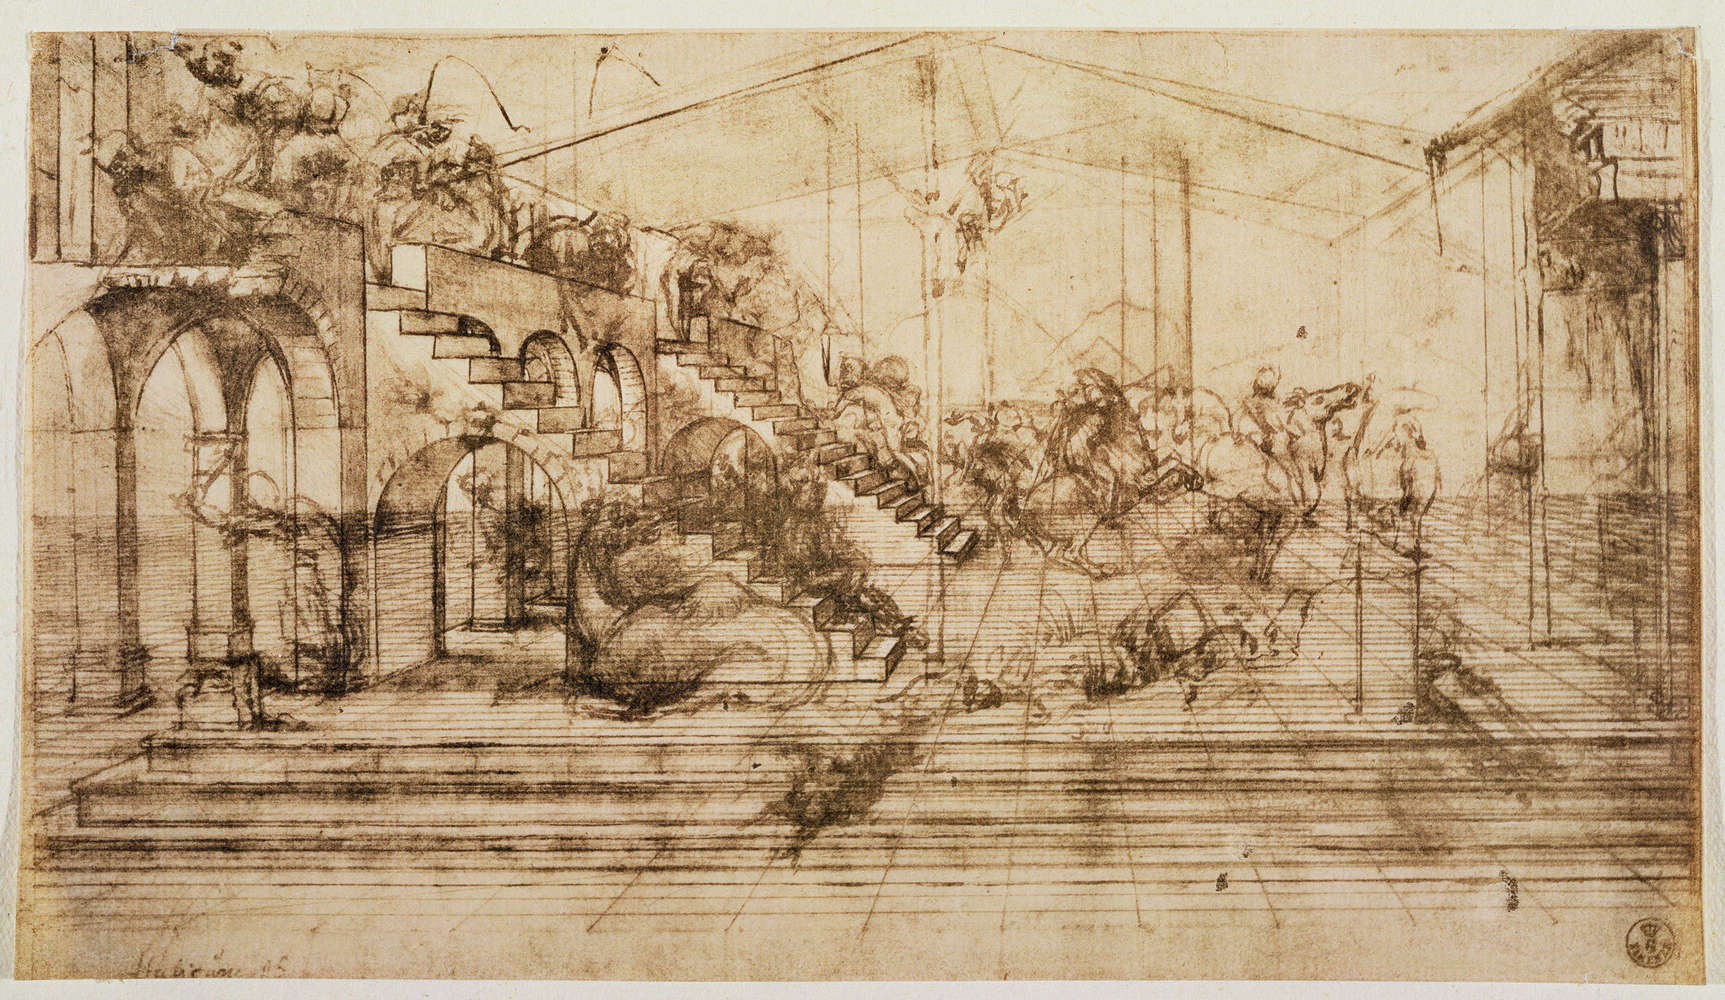             Fototapete "Perspektivische Studie für den Hintergrund der Anbetung der Könige" von Leonardo da Vinci
        